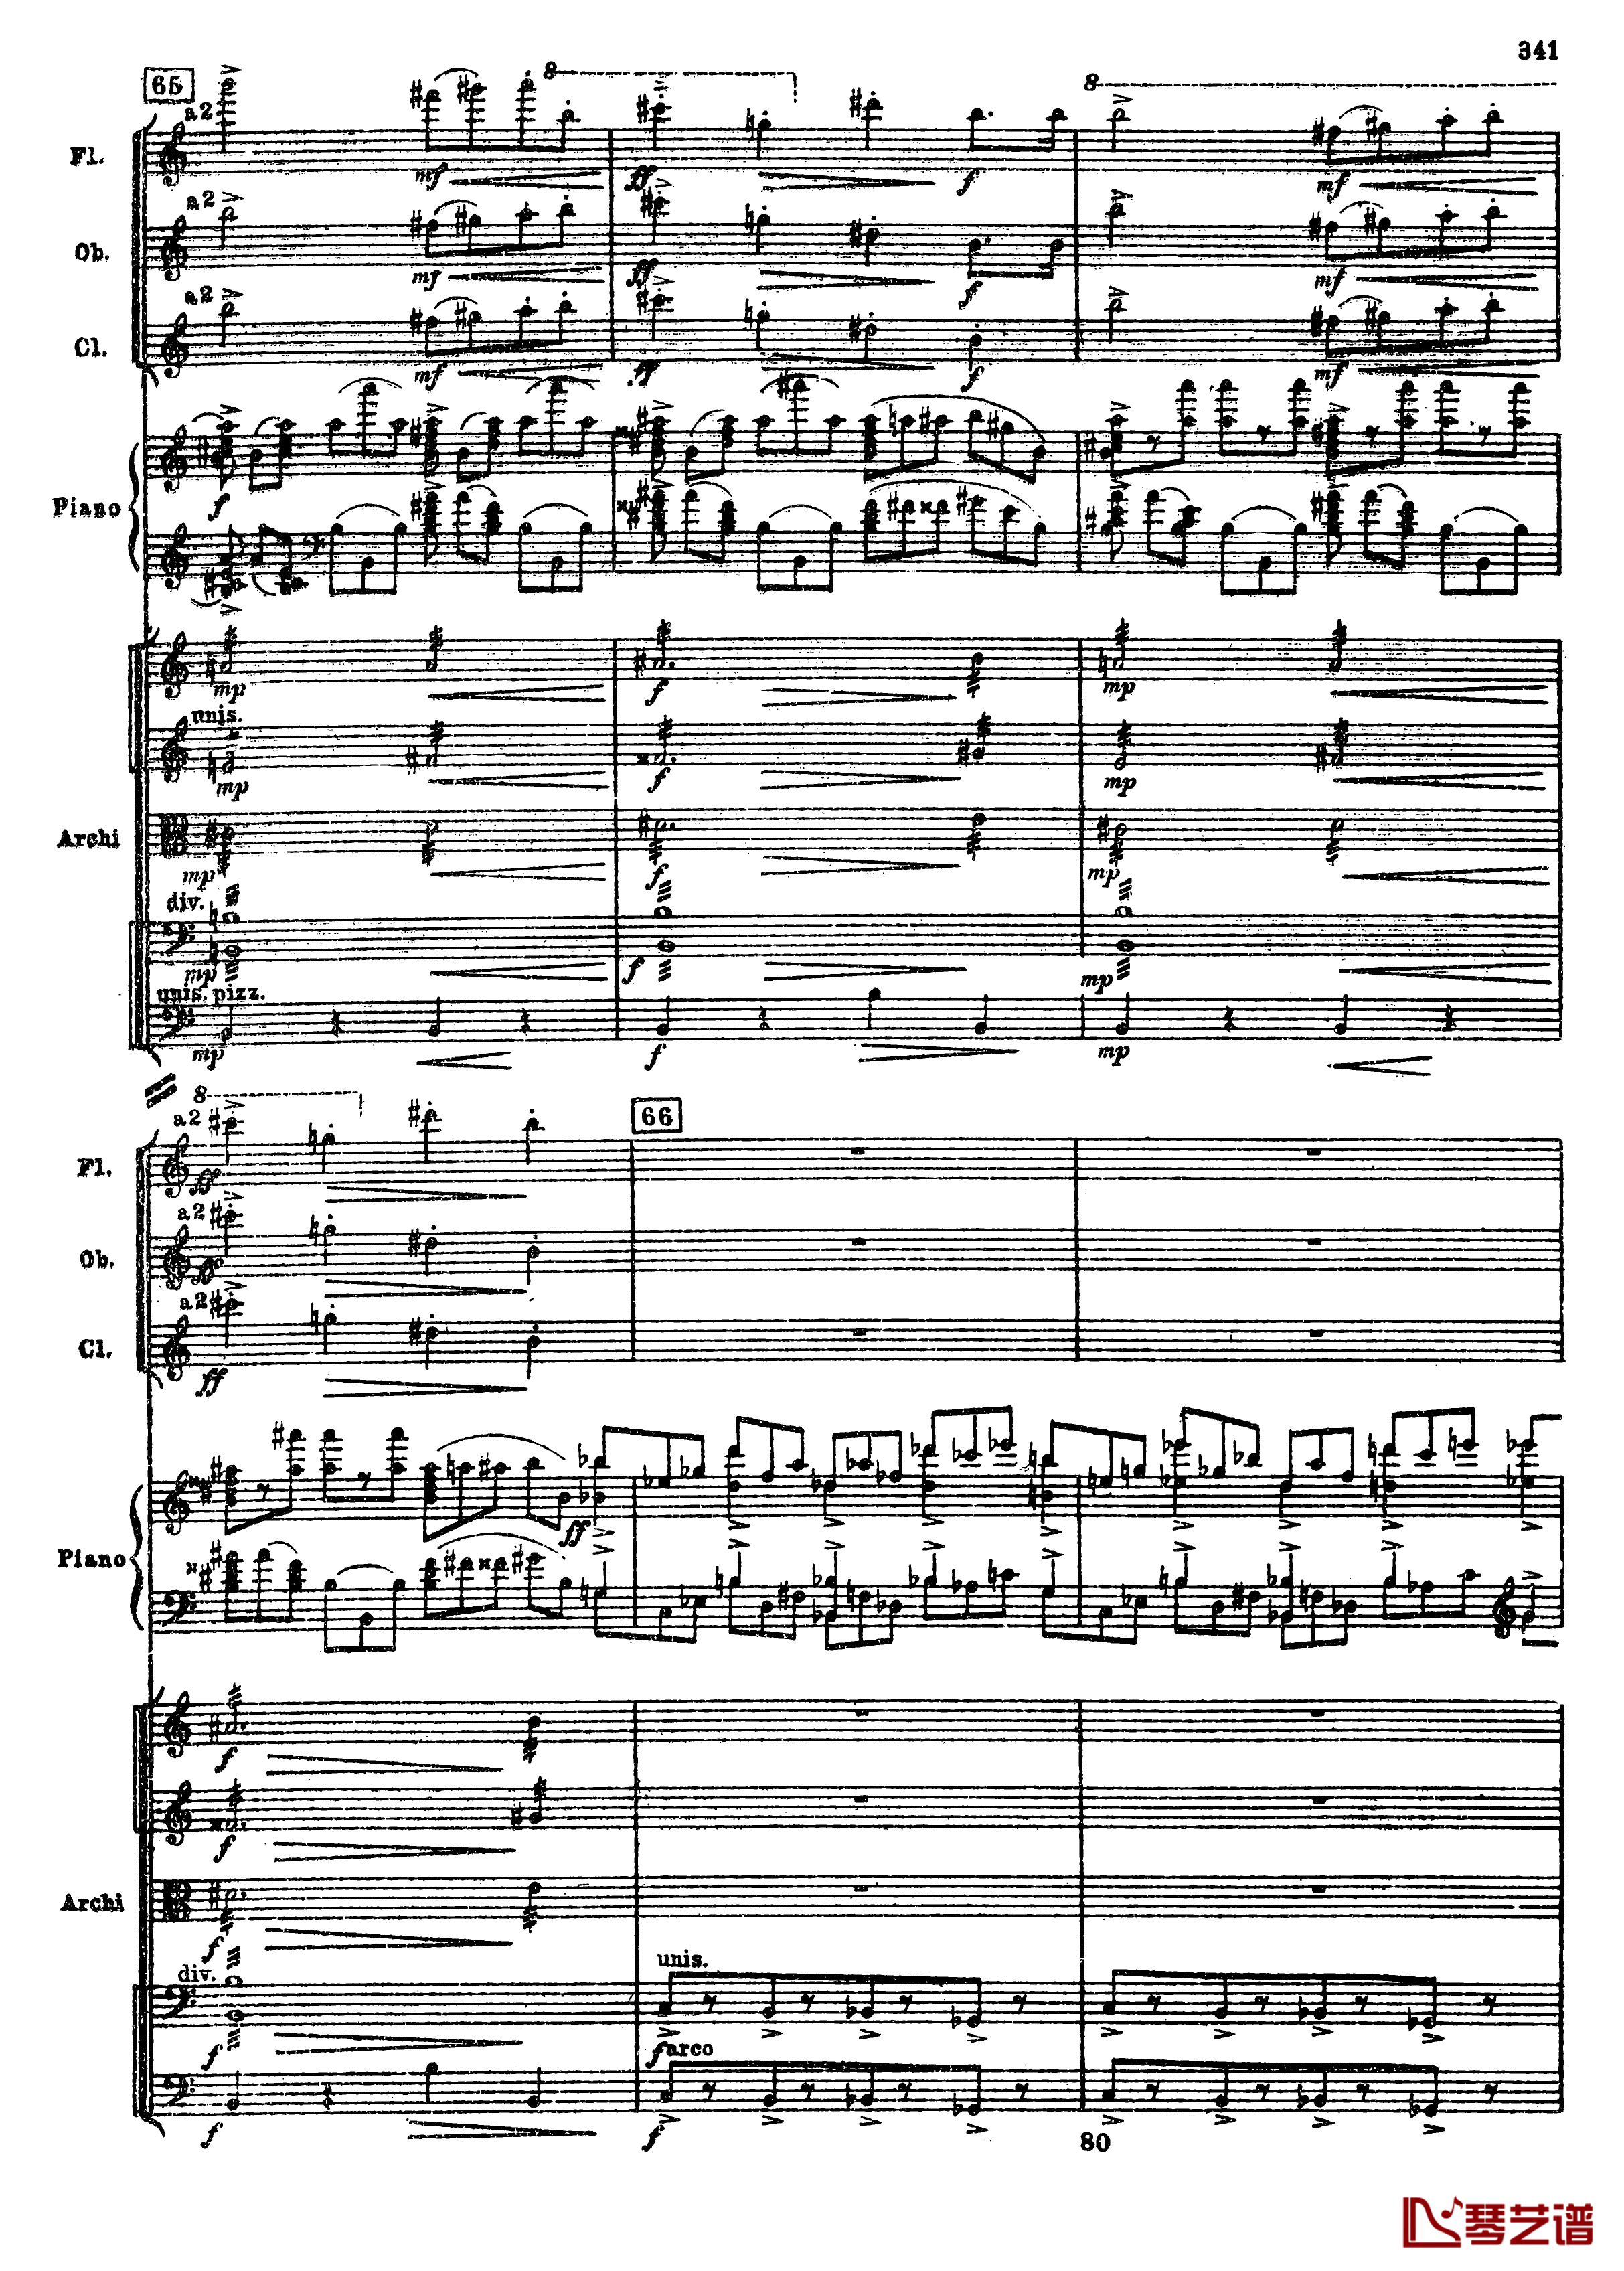 普罗科菲耶夫第三钢琴协奏曲钢琴谱-总谱-普罗科非耶夫73